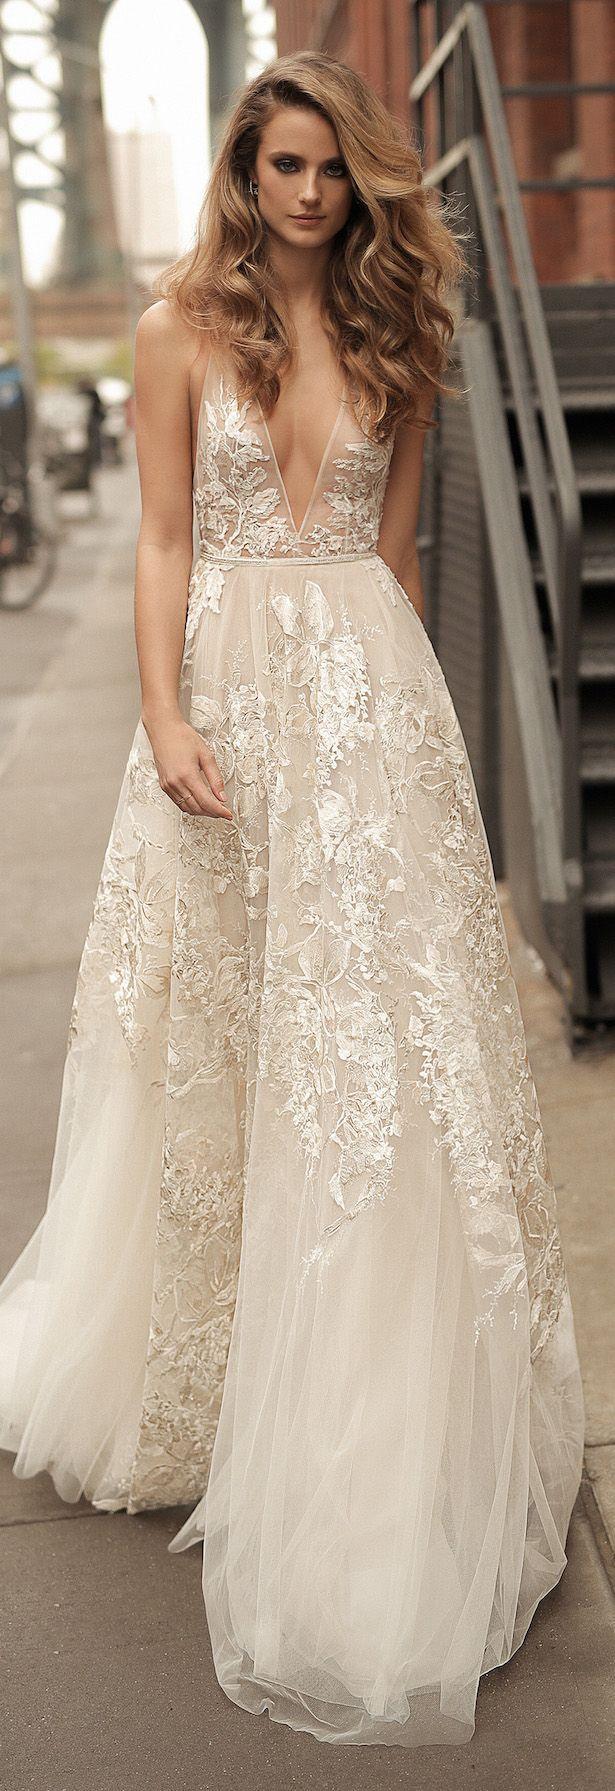 زفاف - Berta Wedding Dress Collection Spring 2018